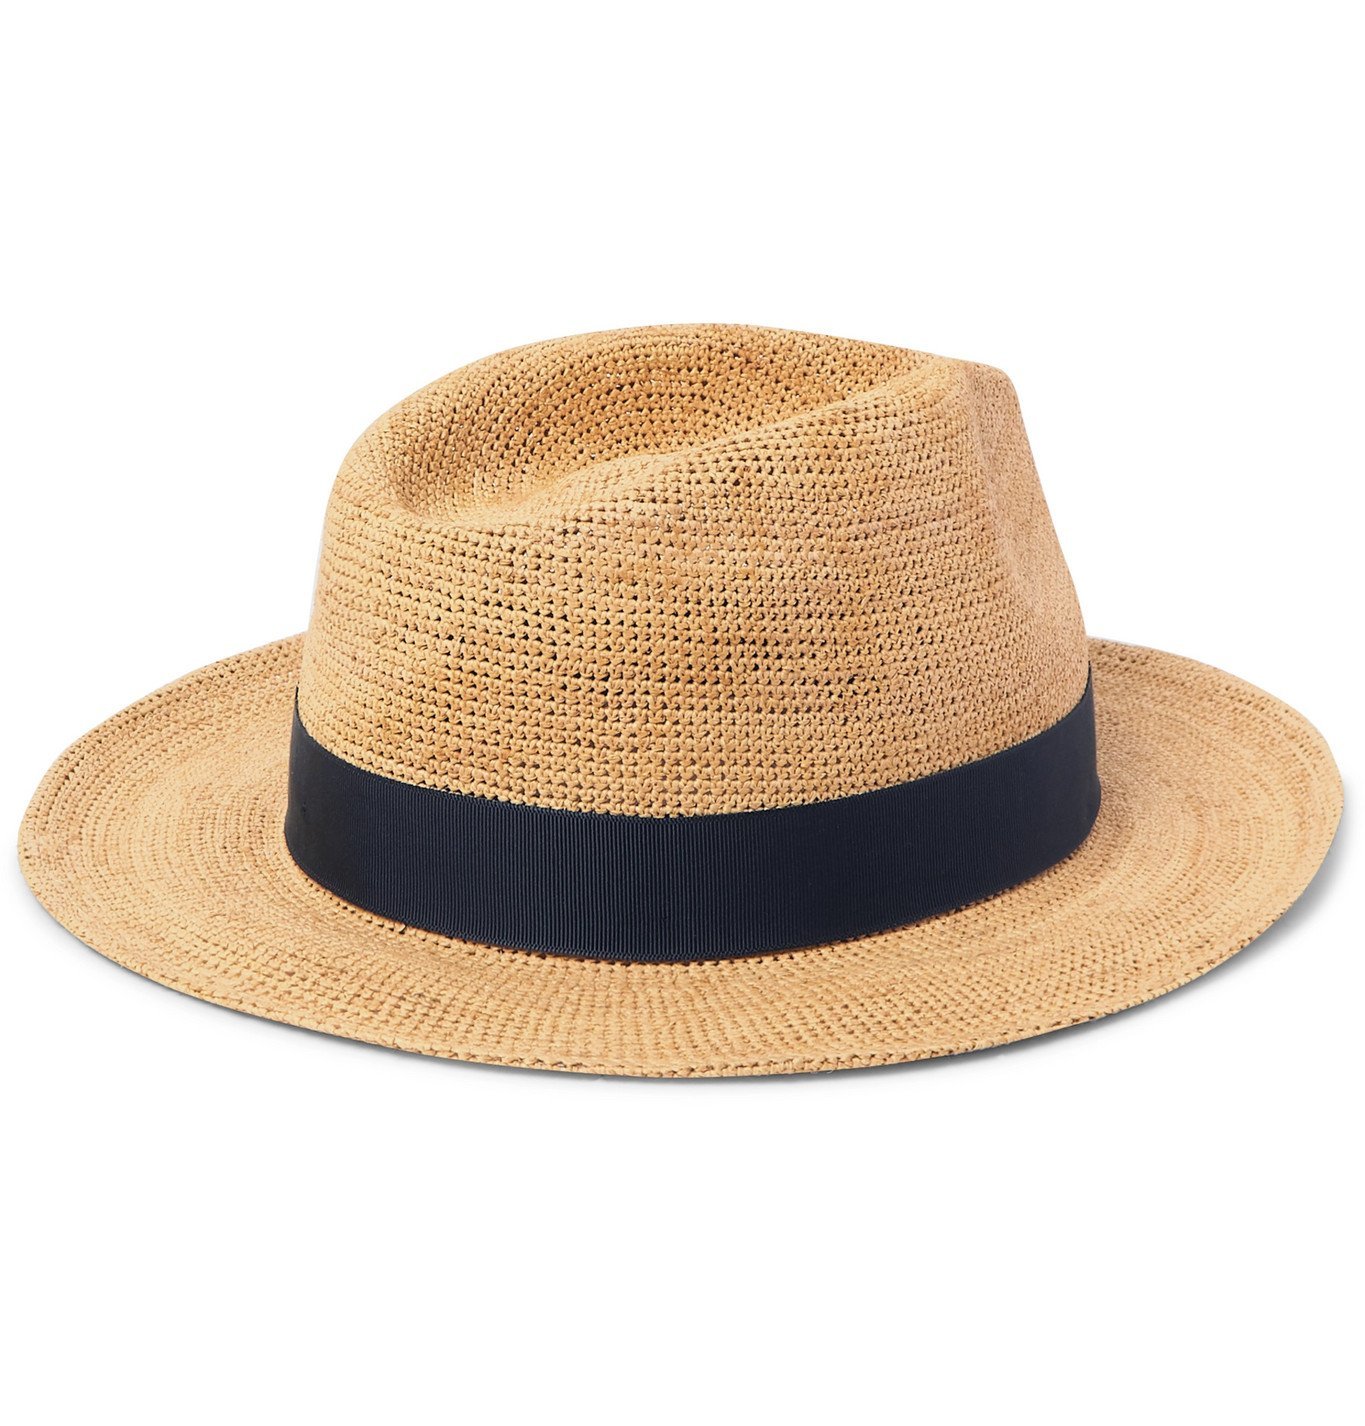 Lock & Co Hatters - St. Louis Grosgrain-Trimmed Straw Panama Hat ...